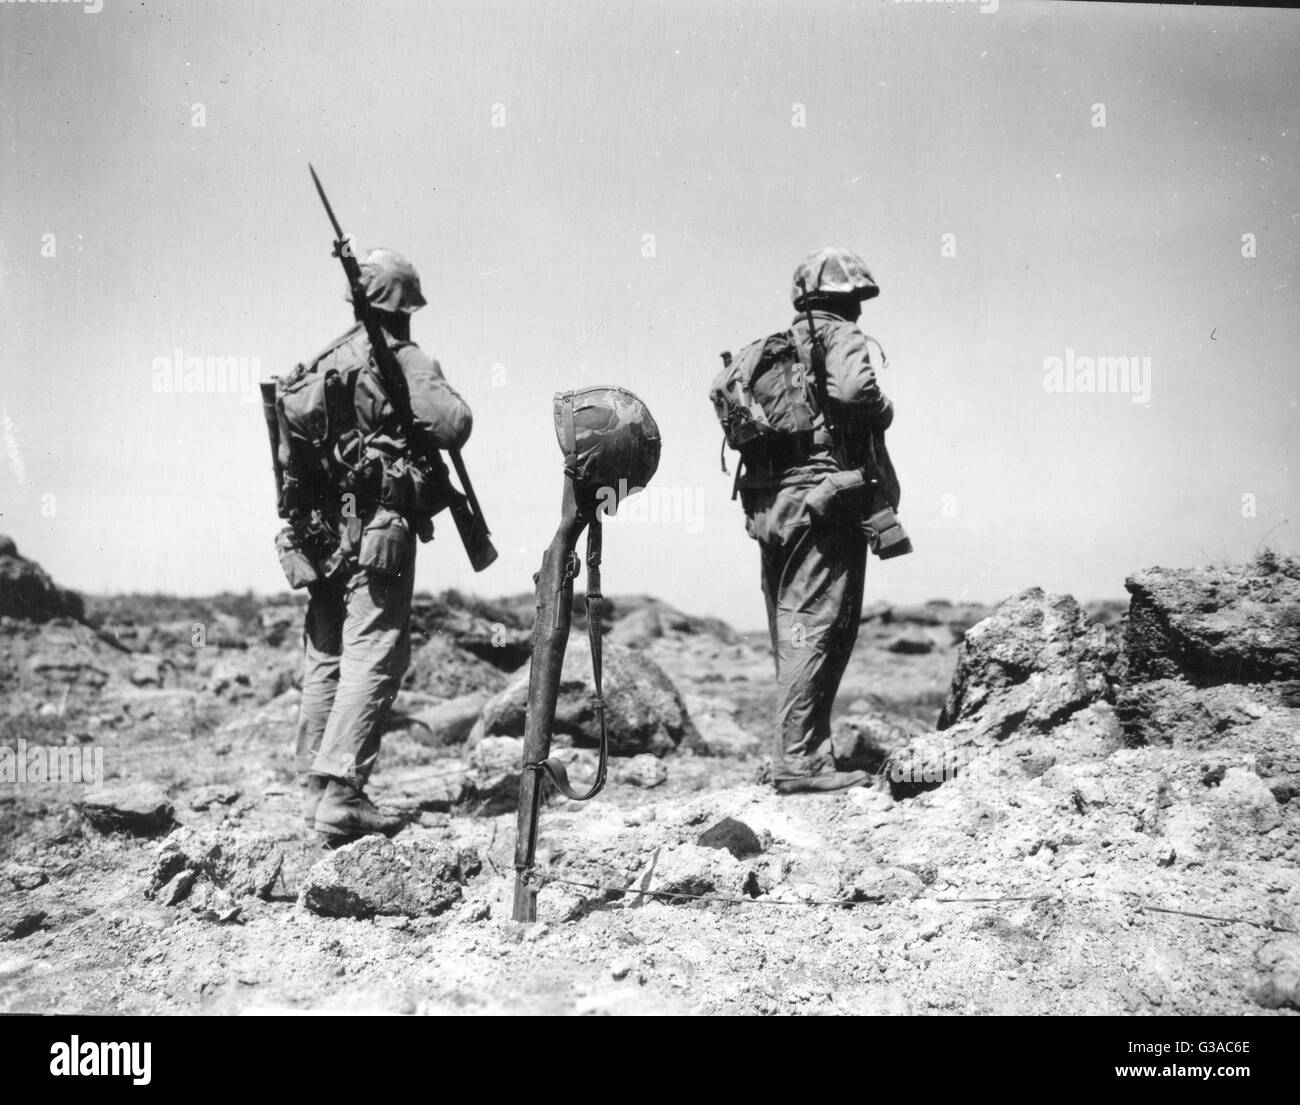 Zwei Marines in das erste Bataillon, 26. Marines in der Vergangenheit temporären Grab eines Space-Marines, gekennzeichnet durch seine Waffe und Helm bewegen. Stockfoto